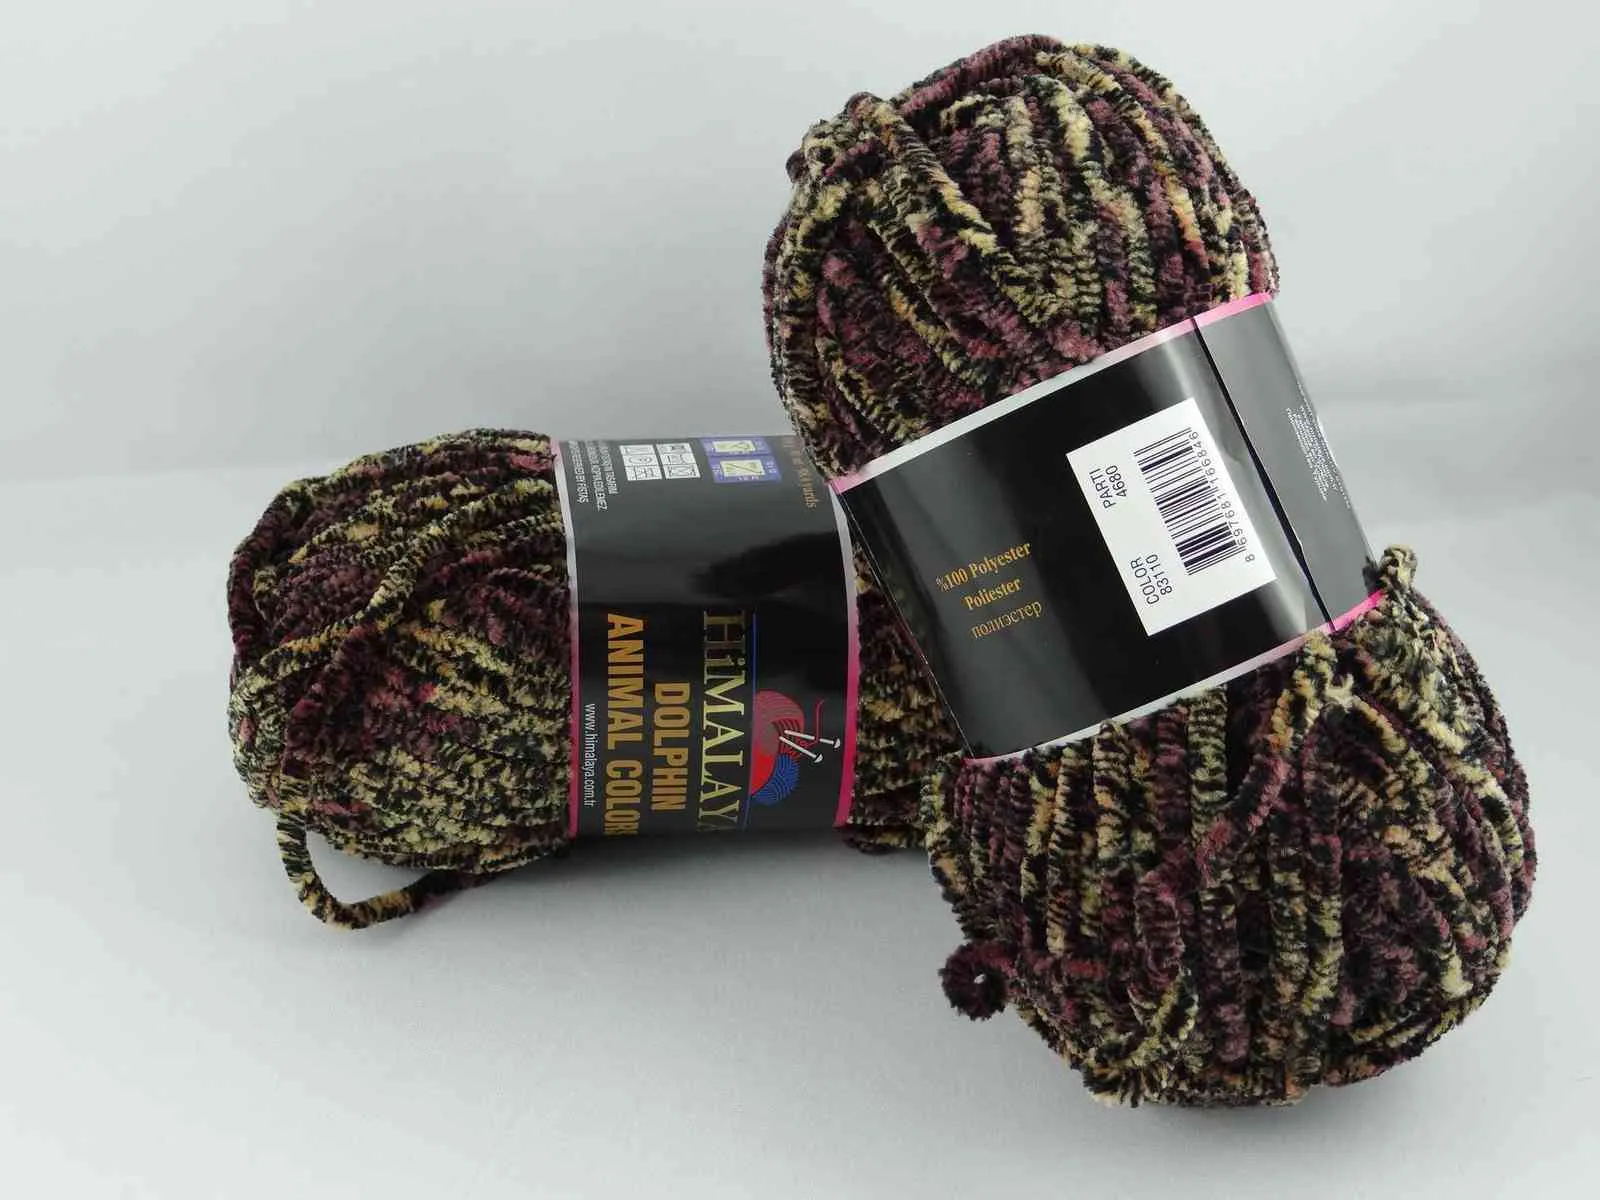 Himalaya VELVET Knitting Crochet Yarn 100g Extra Soft Bulky Plush